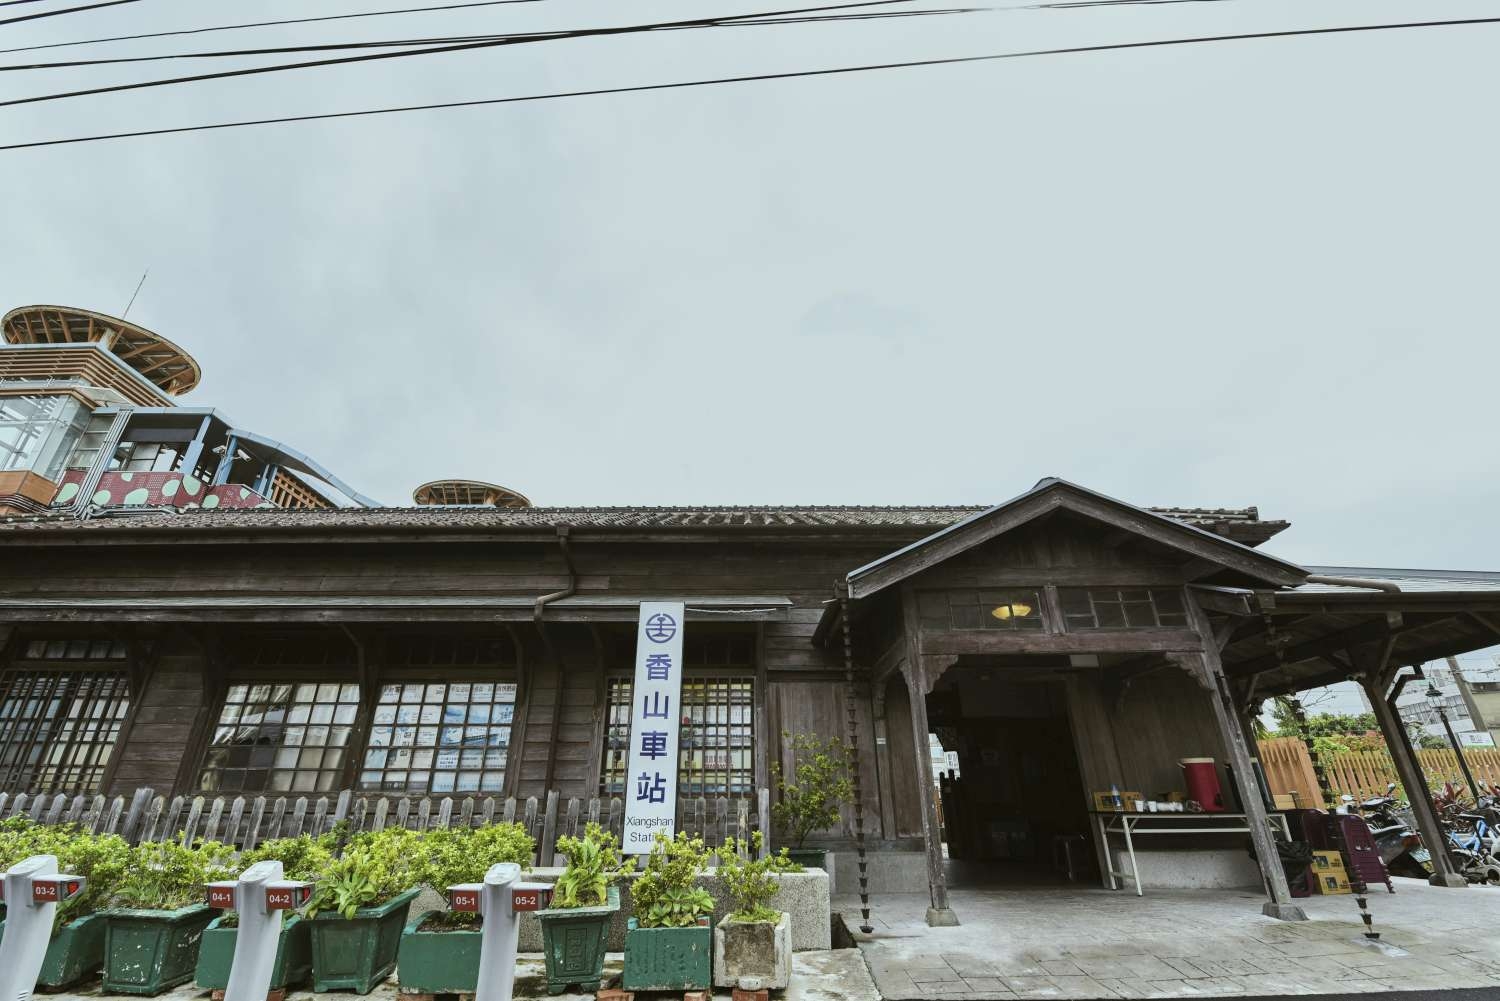 微旅行聖地 全台僅存唯一檜木火車站香山火車站90歲生日檜樂